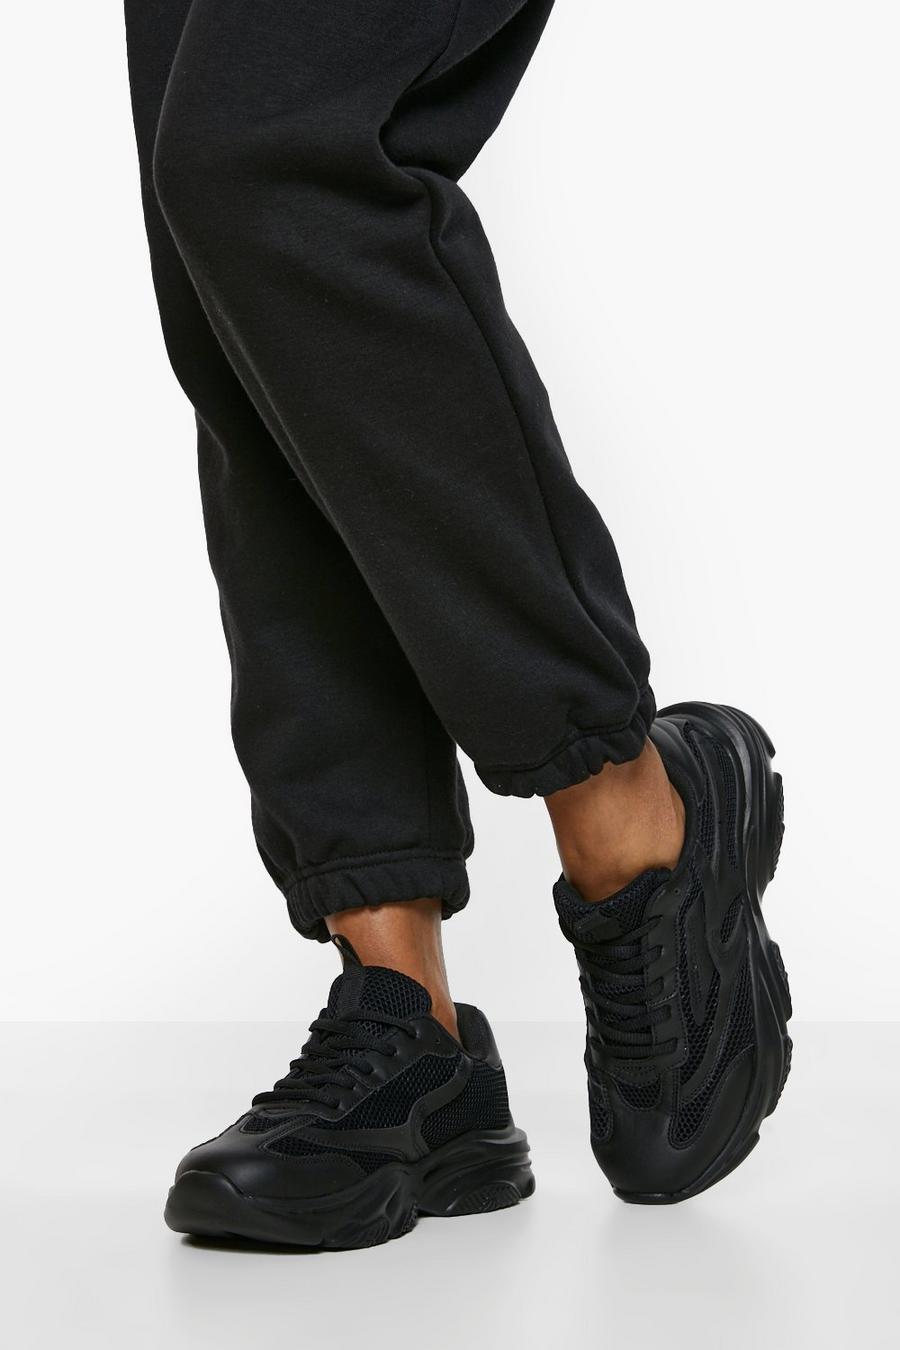 Zapatillas deportivas de holgura ancha gruesas con panel de malla en contraste, Black negro